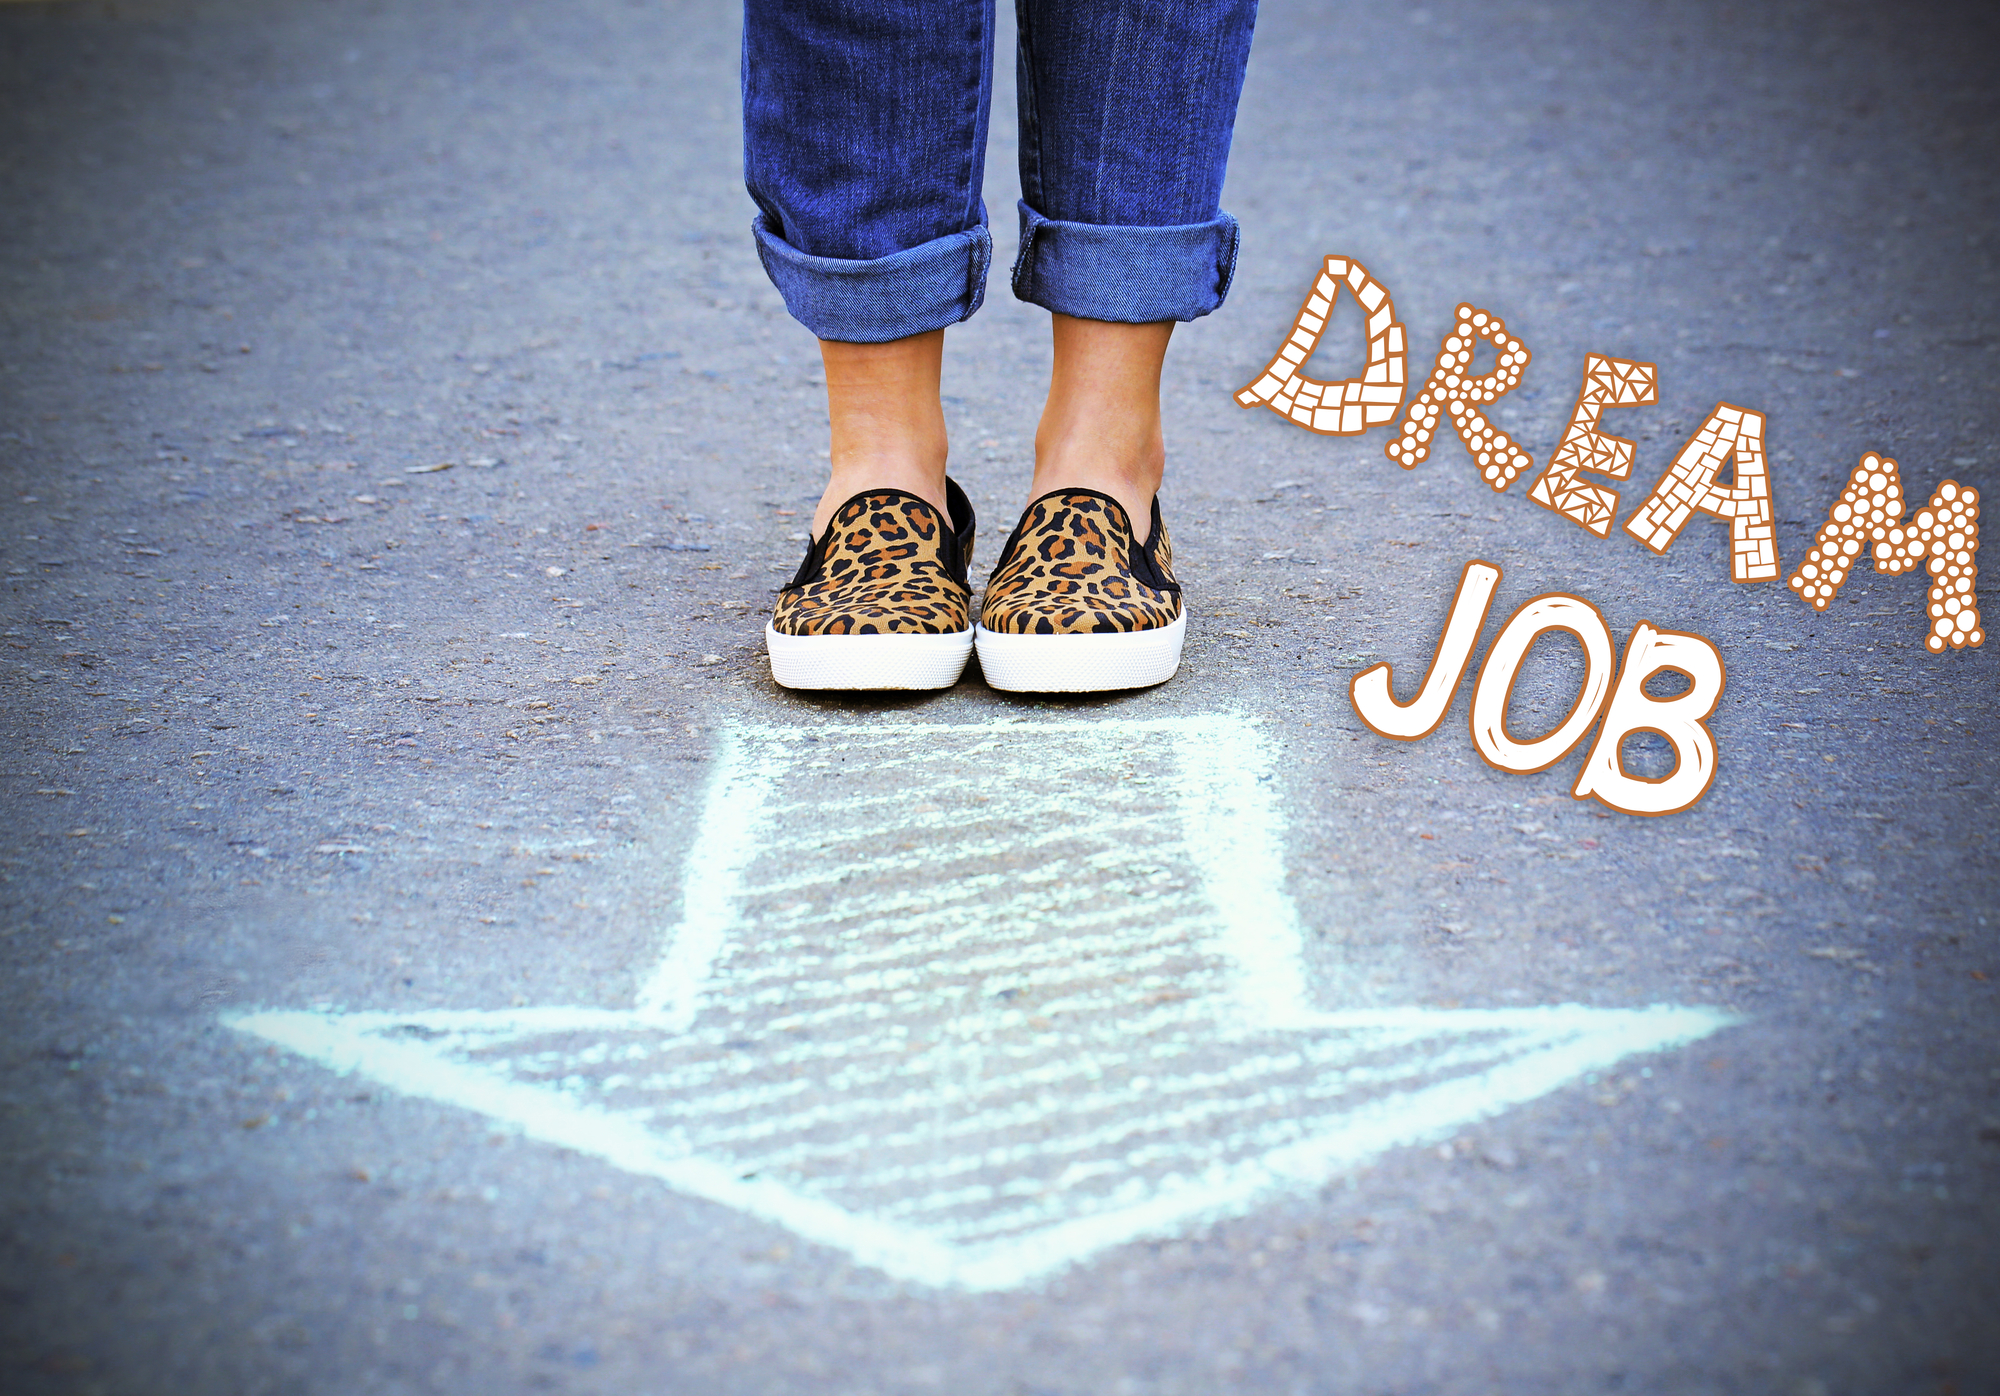 Find you dream job